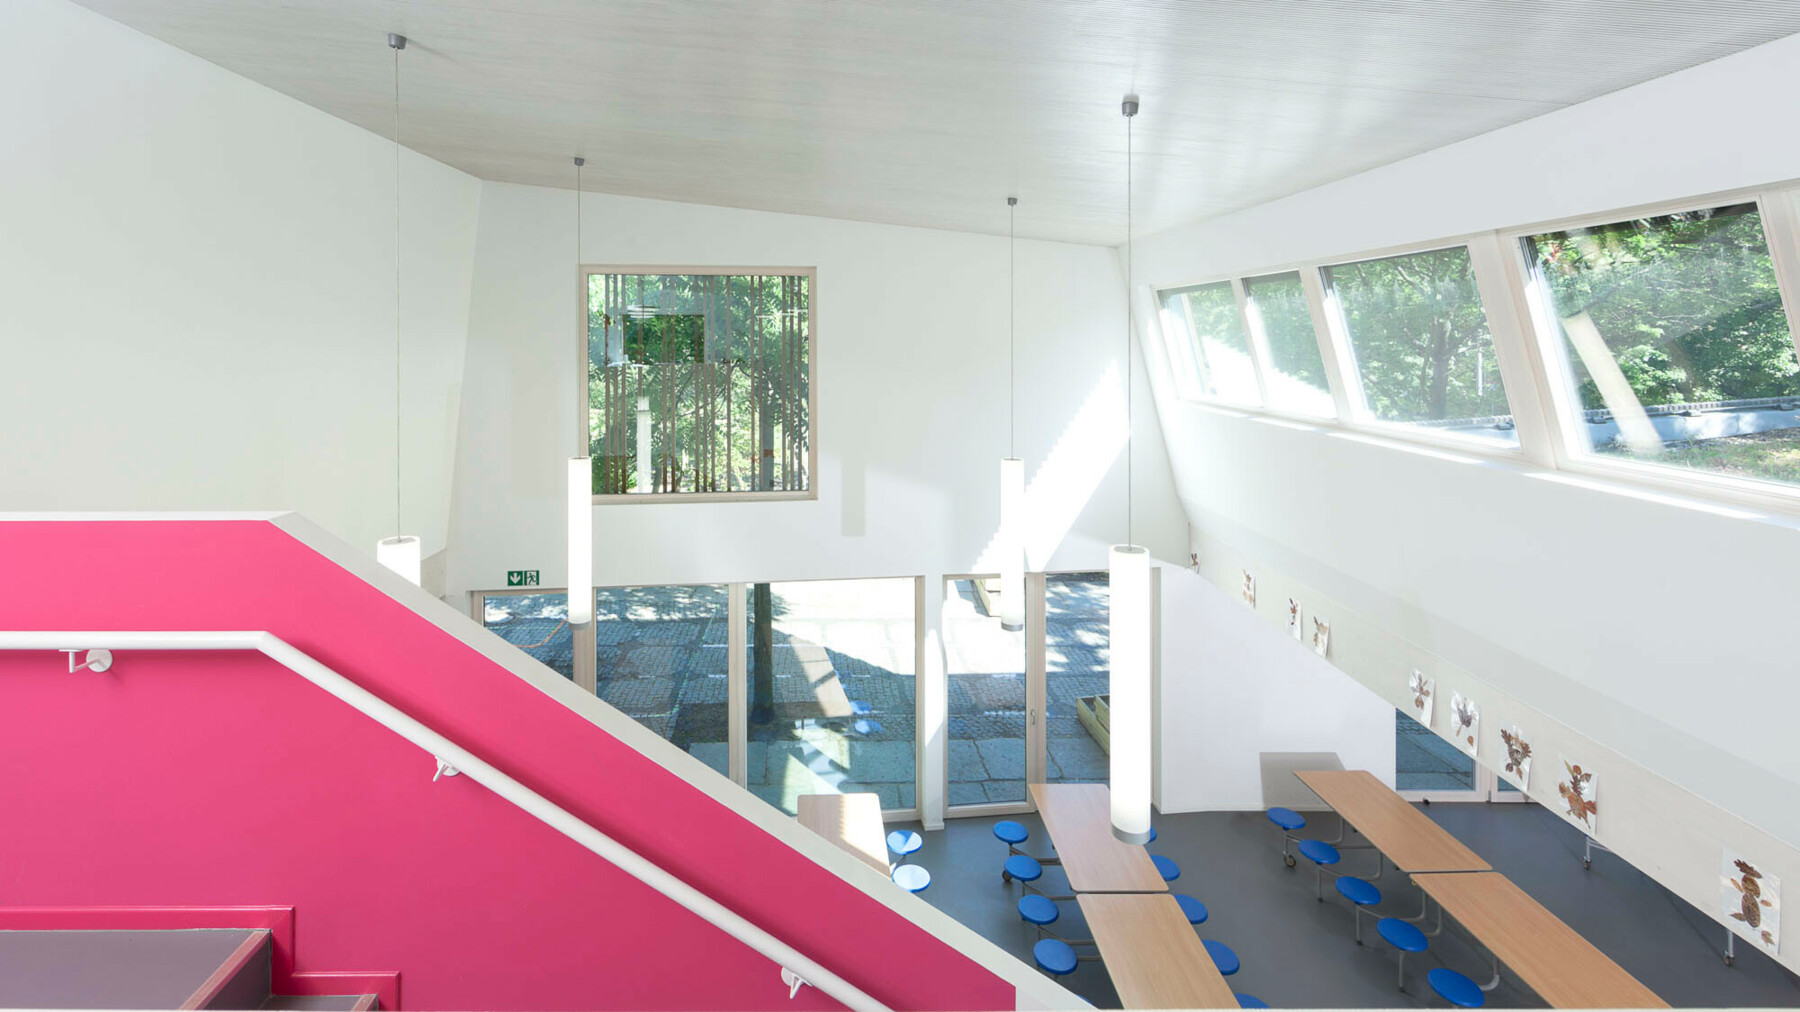 Eine breite Treppe führt von der Mitte des Speisesaals hoch in die Galerie und dient durch die pinke Anstreichung als kontrastreicher Blickfang in dem ansonsten weiß gehaltenen Raum.